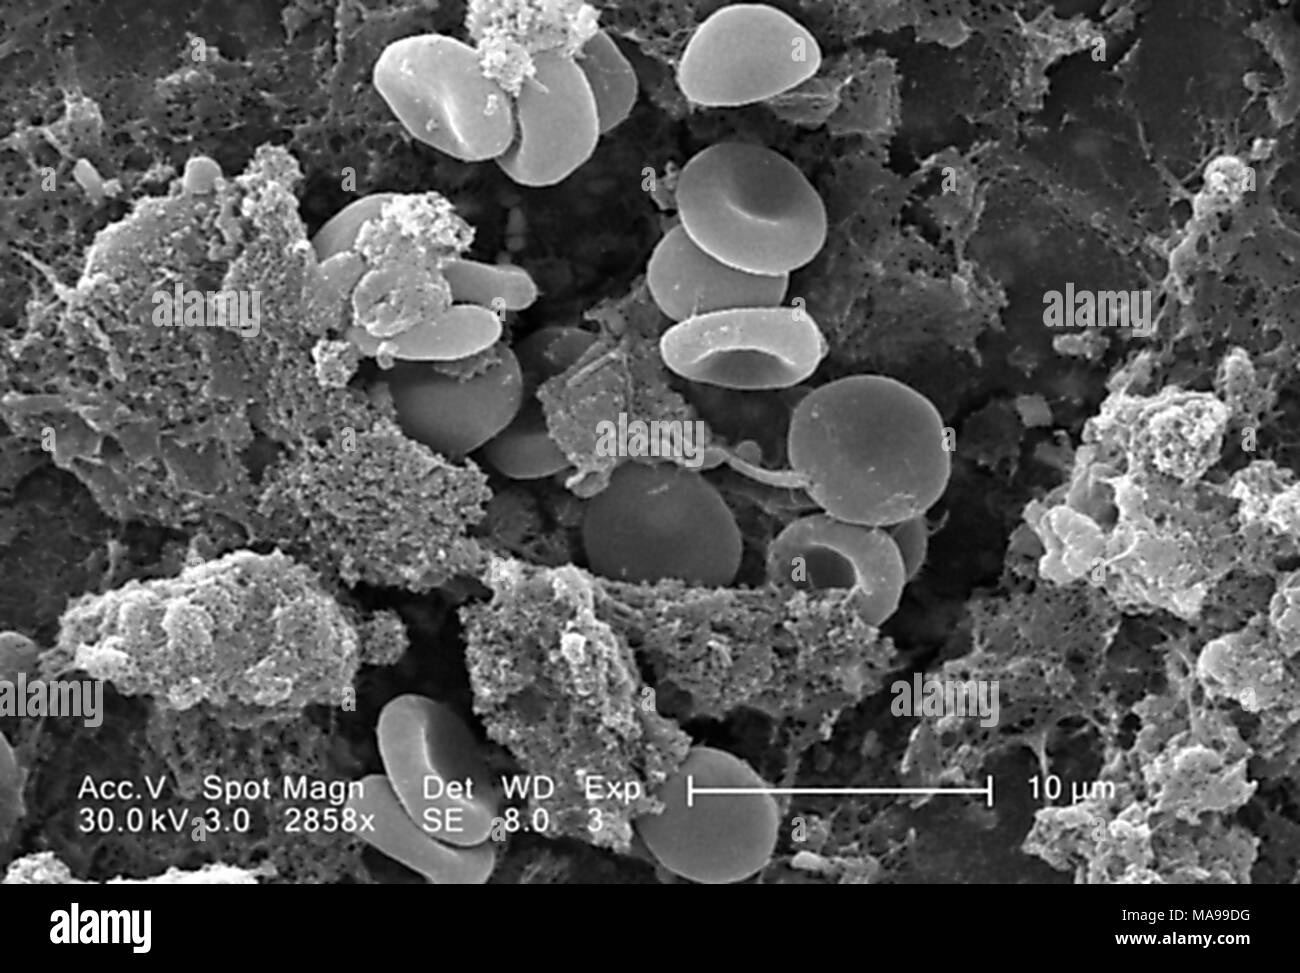 Die roten Blutkörperchen in einem Fibrinöse Matrix auf der luminalen Oberfläche eines Innewohnung Kreislauf-katheter im Raster-Elektronen-Mikroskop (REM) Bild 2005 aufgedeckt. Mit freundlicher Seuchenkontrollzentren (CDC)/Janice Haney Carr. () Stockfoto